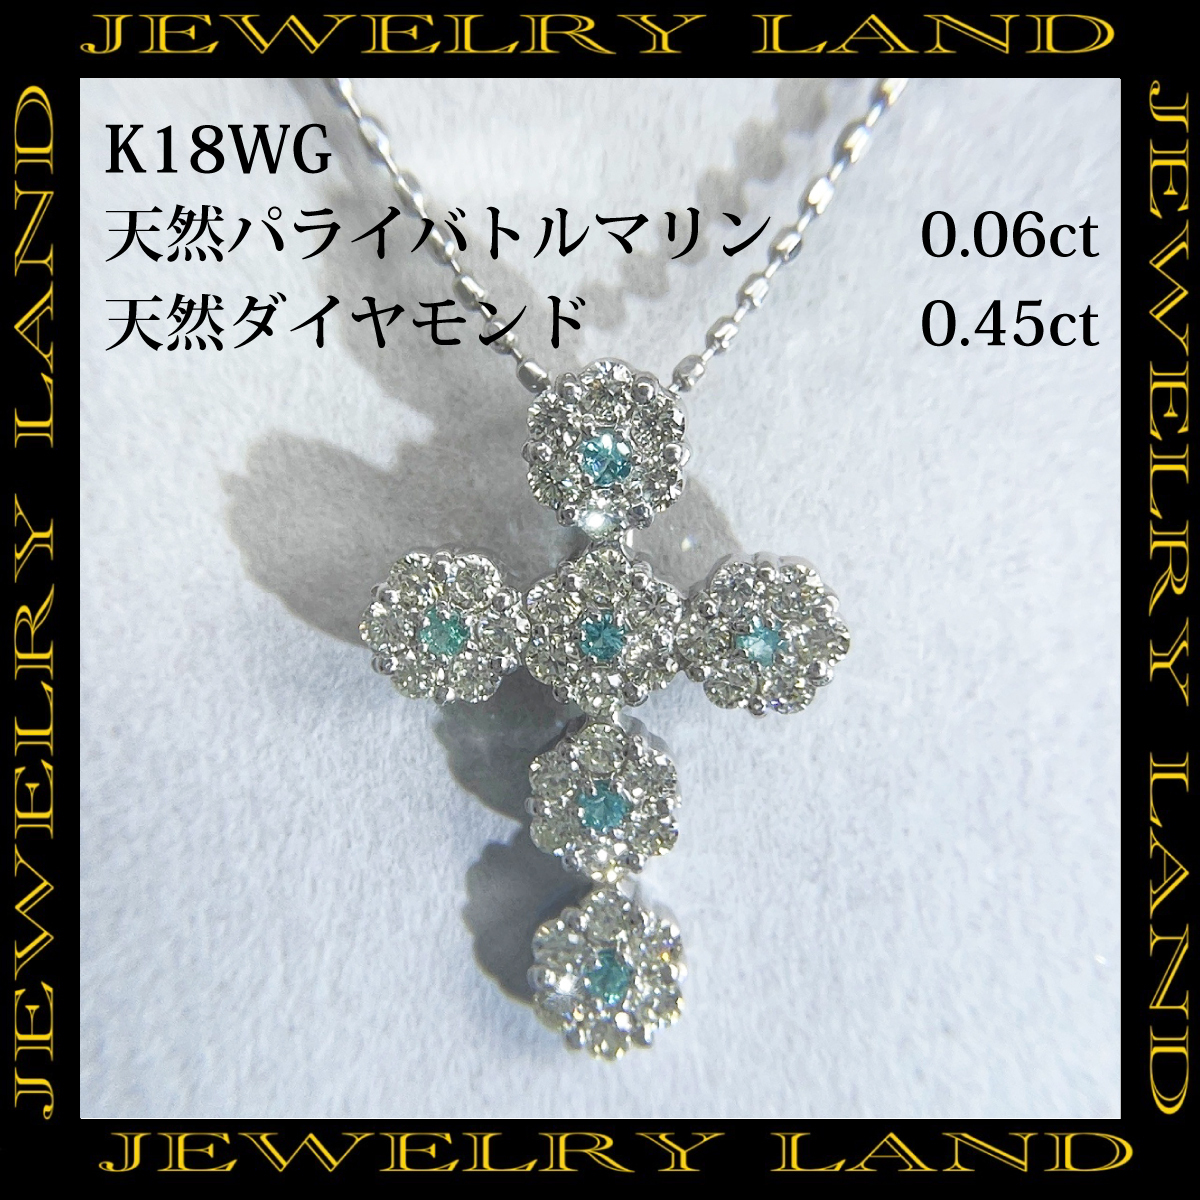 K18wg 天然パライバトルマリン 0.06ct 天然ダイヤモンド 0.45ct